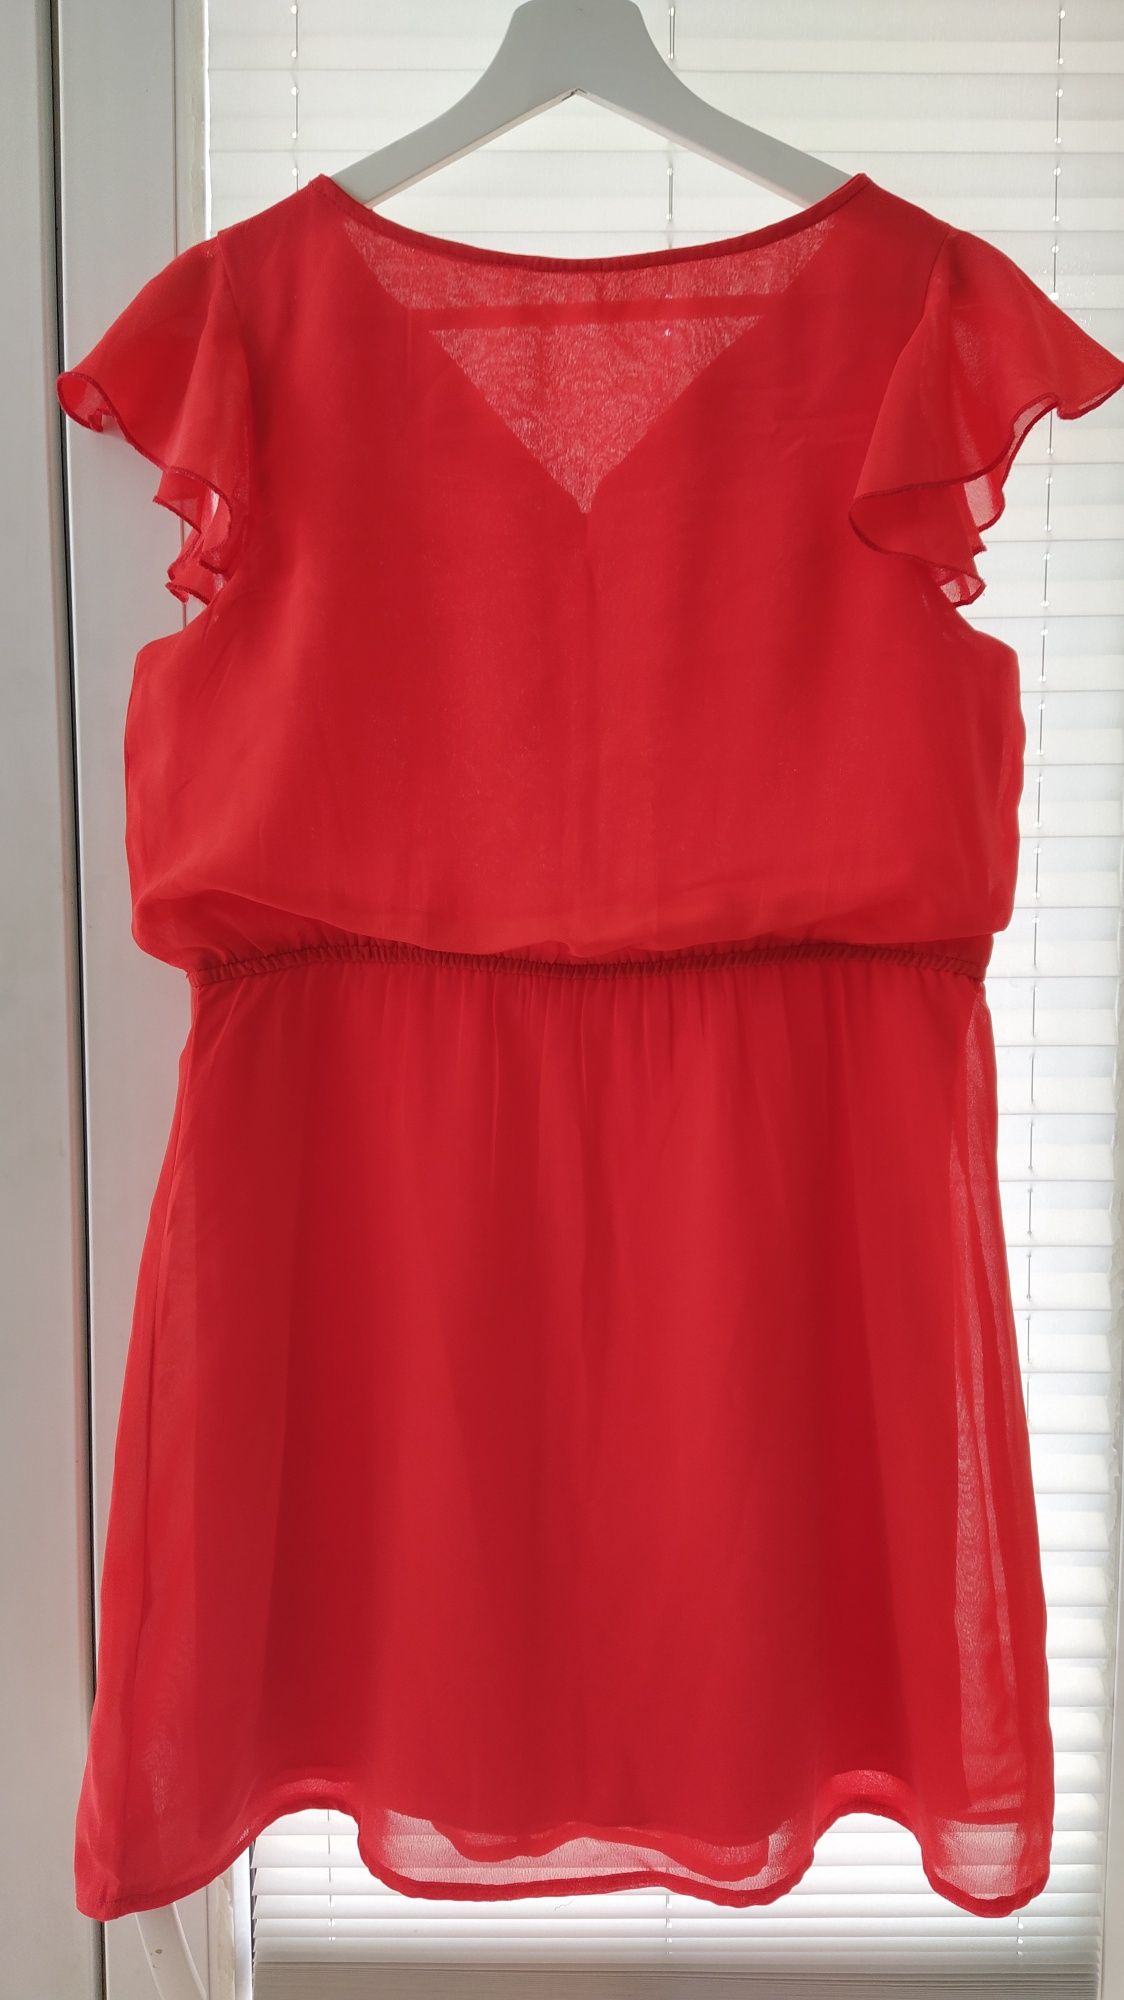 Czerwona sukienka na lato